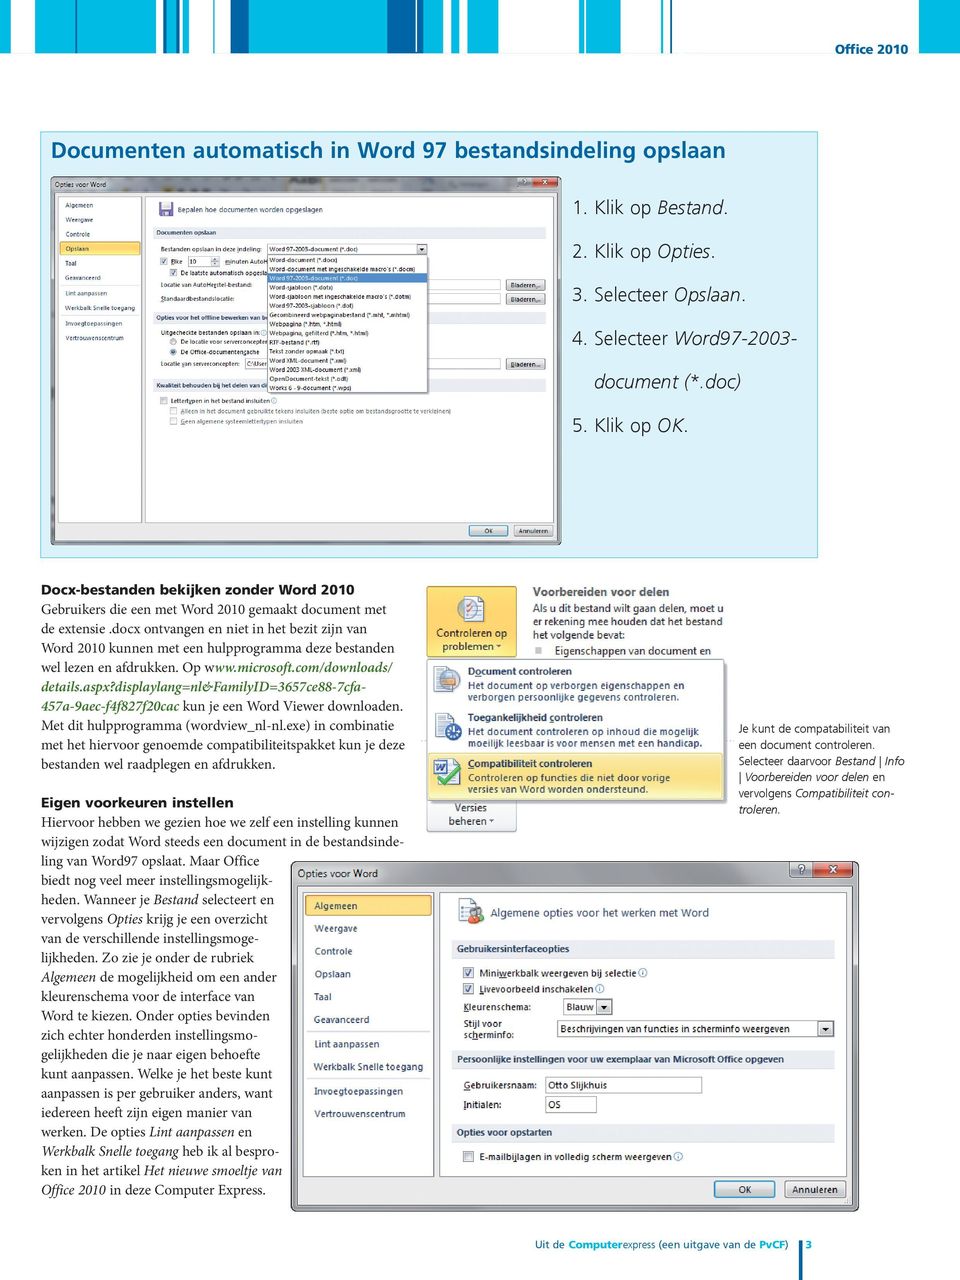 docx ontvangen en niet in het bezit zijn van Word 2010 kunnen met een hulpprogramma deze bestanden wel lezen en afdrukken. Op www.microsoft.com/downloads/ details.aspx?